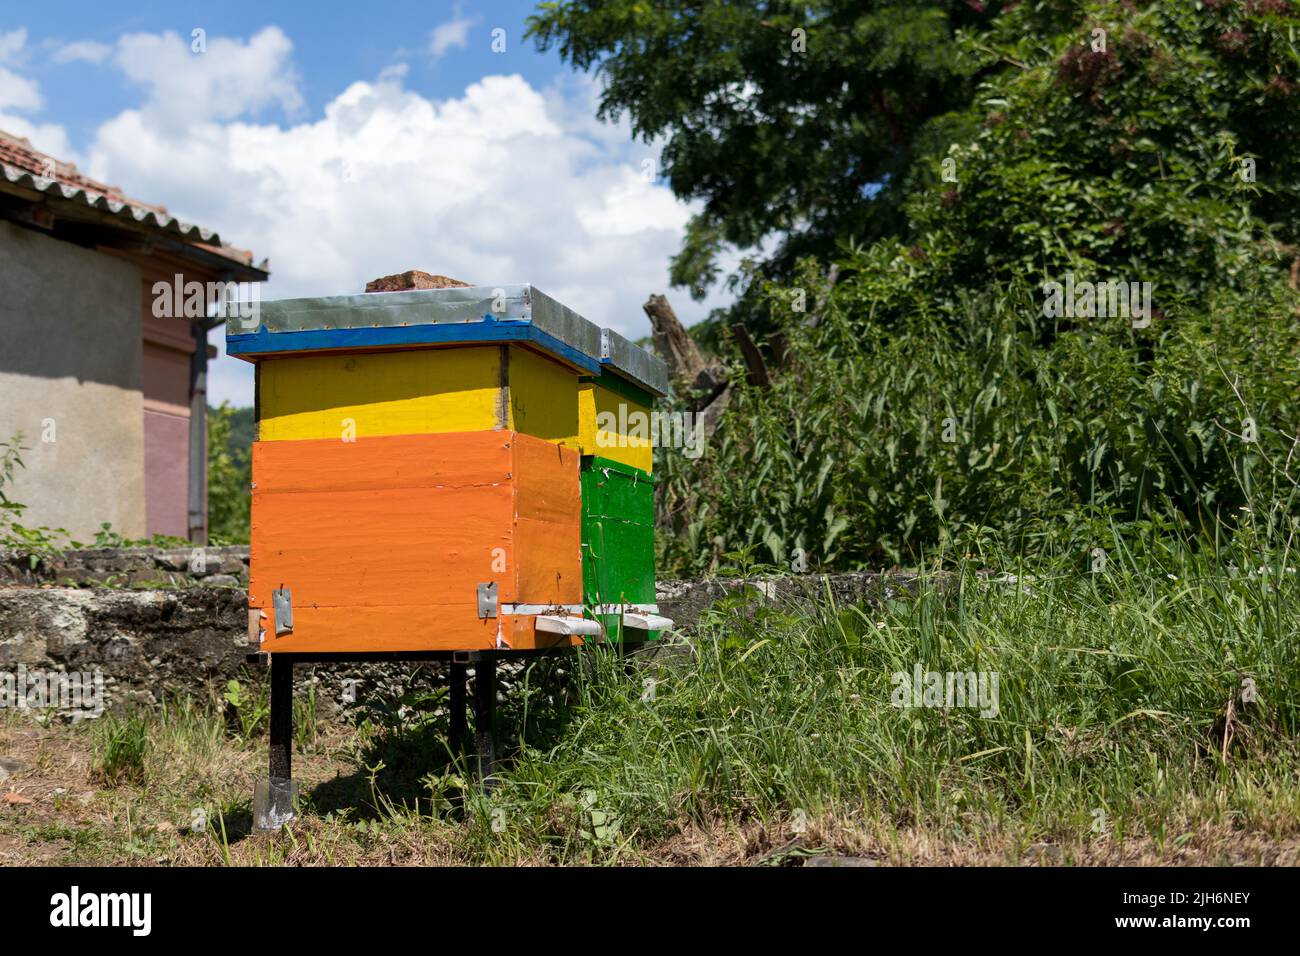 Deux ruches en bois colorées dans une ruche lors d'une journée ensoleillée d'été. Concept d'apiculture Banque D'Images